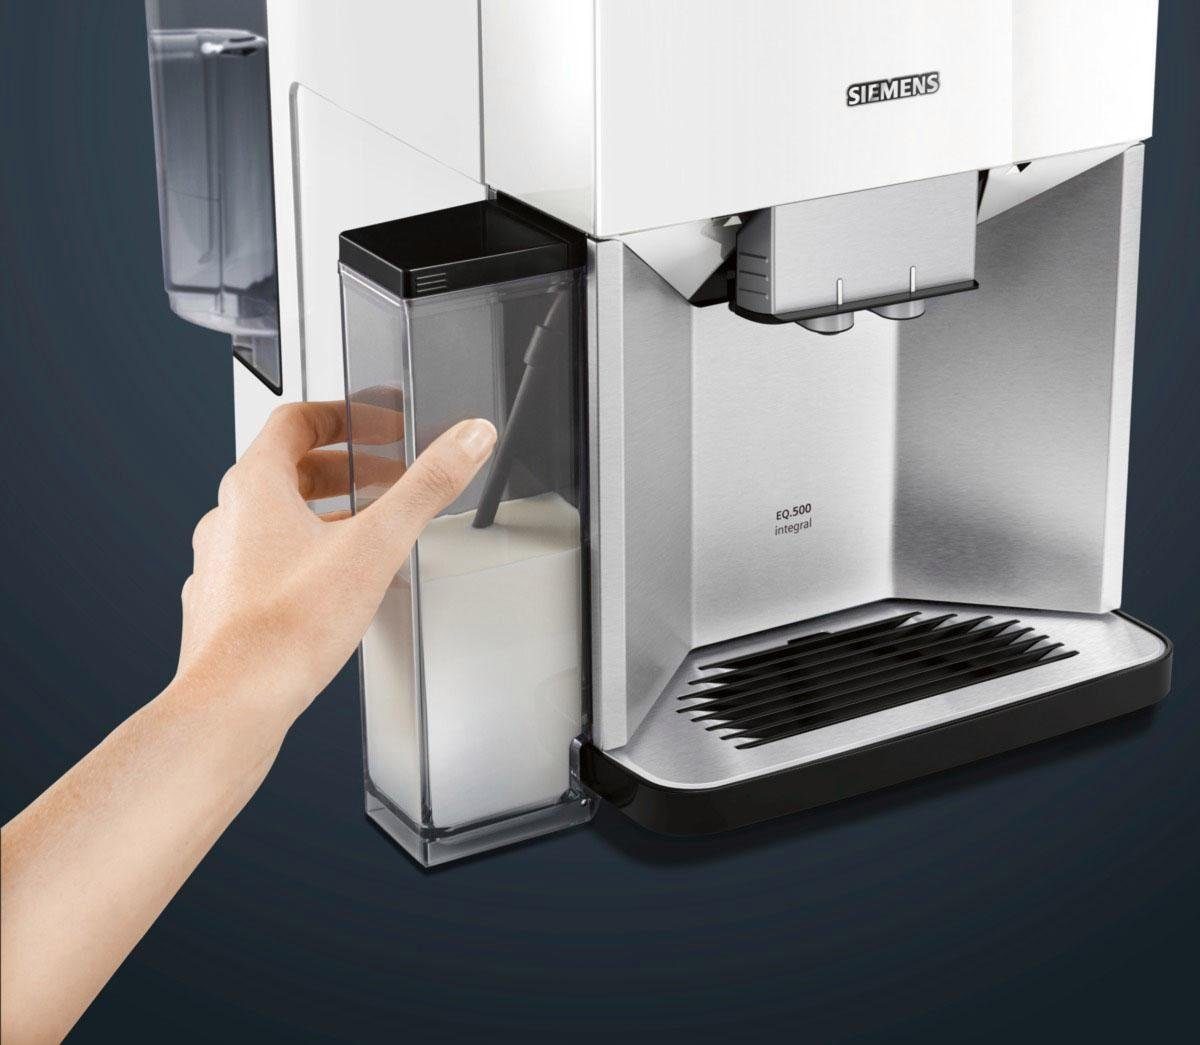 Tassen EQ.500 TQ507D02, SIEMENS gleichzeitig einfache Milchbehälter, integral 2 Bedienung, integrierter Kaffeevollautomat